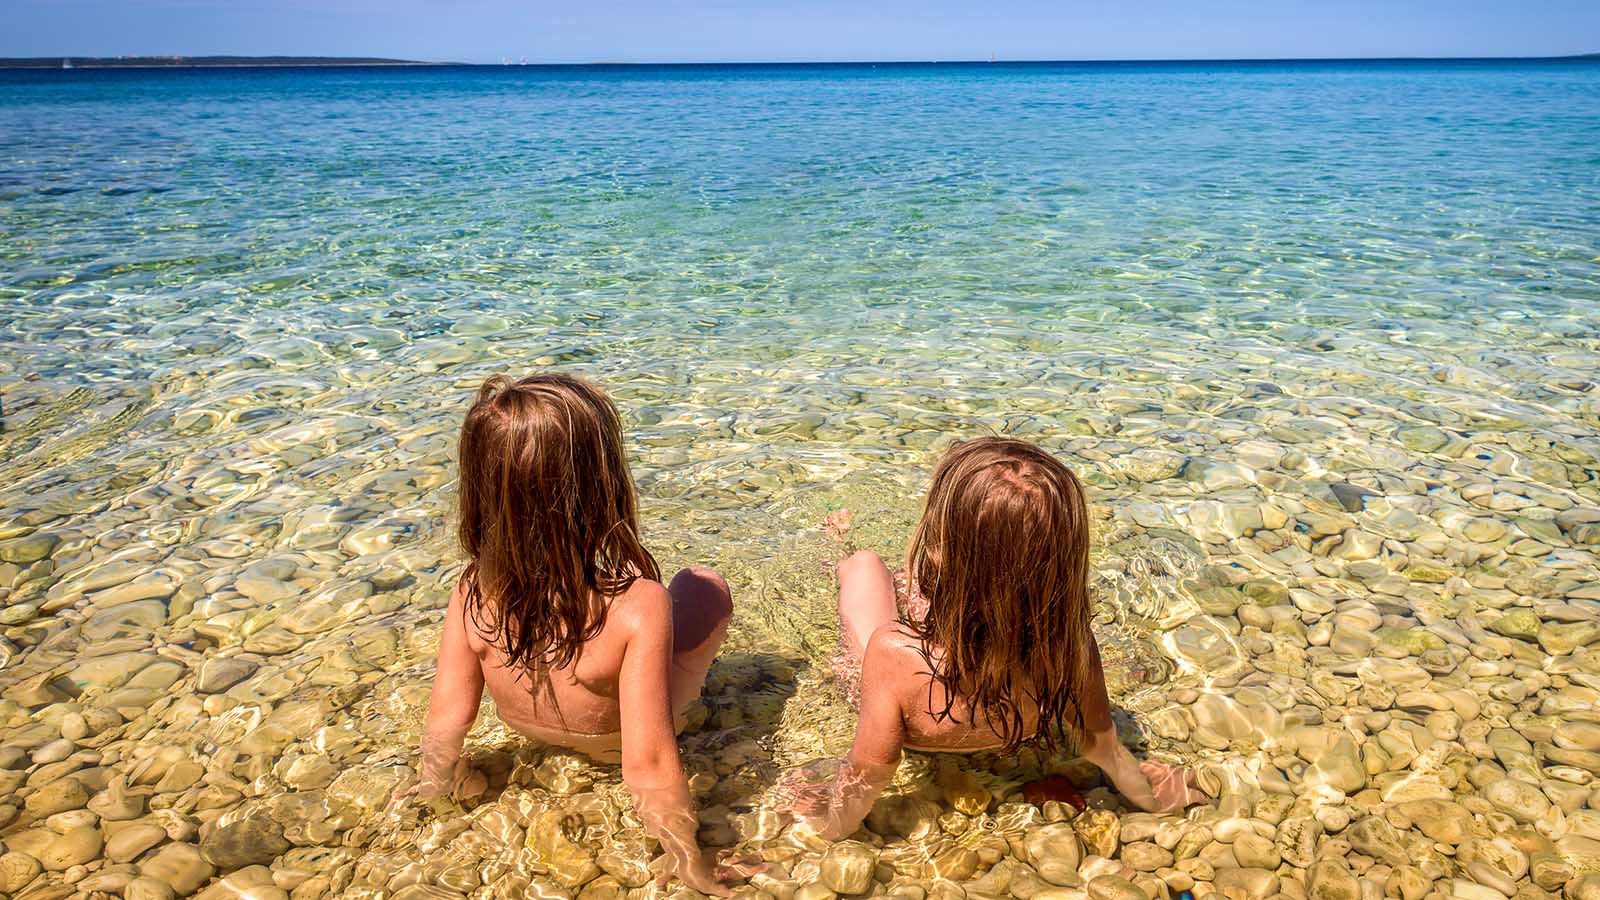 нудистский пляж с голыми детьми фото 3